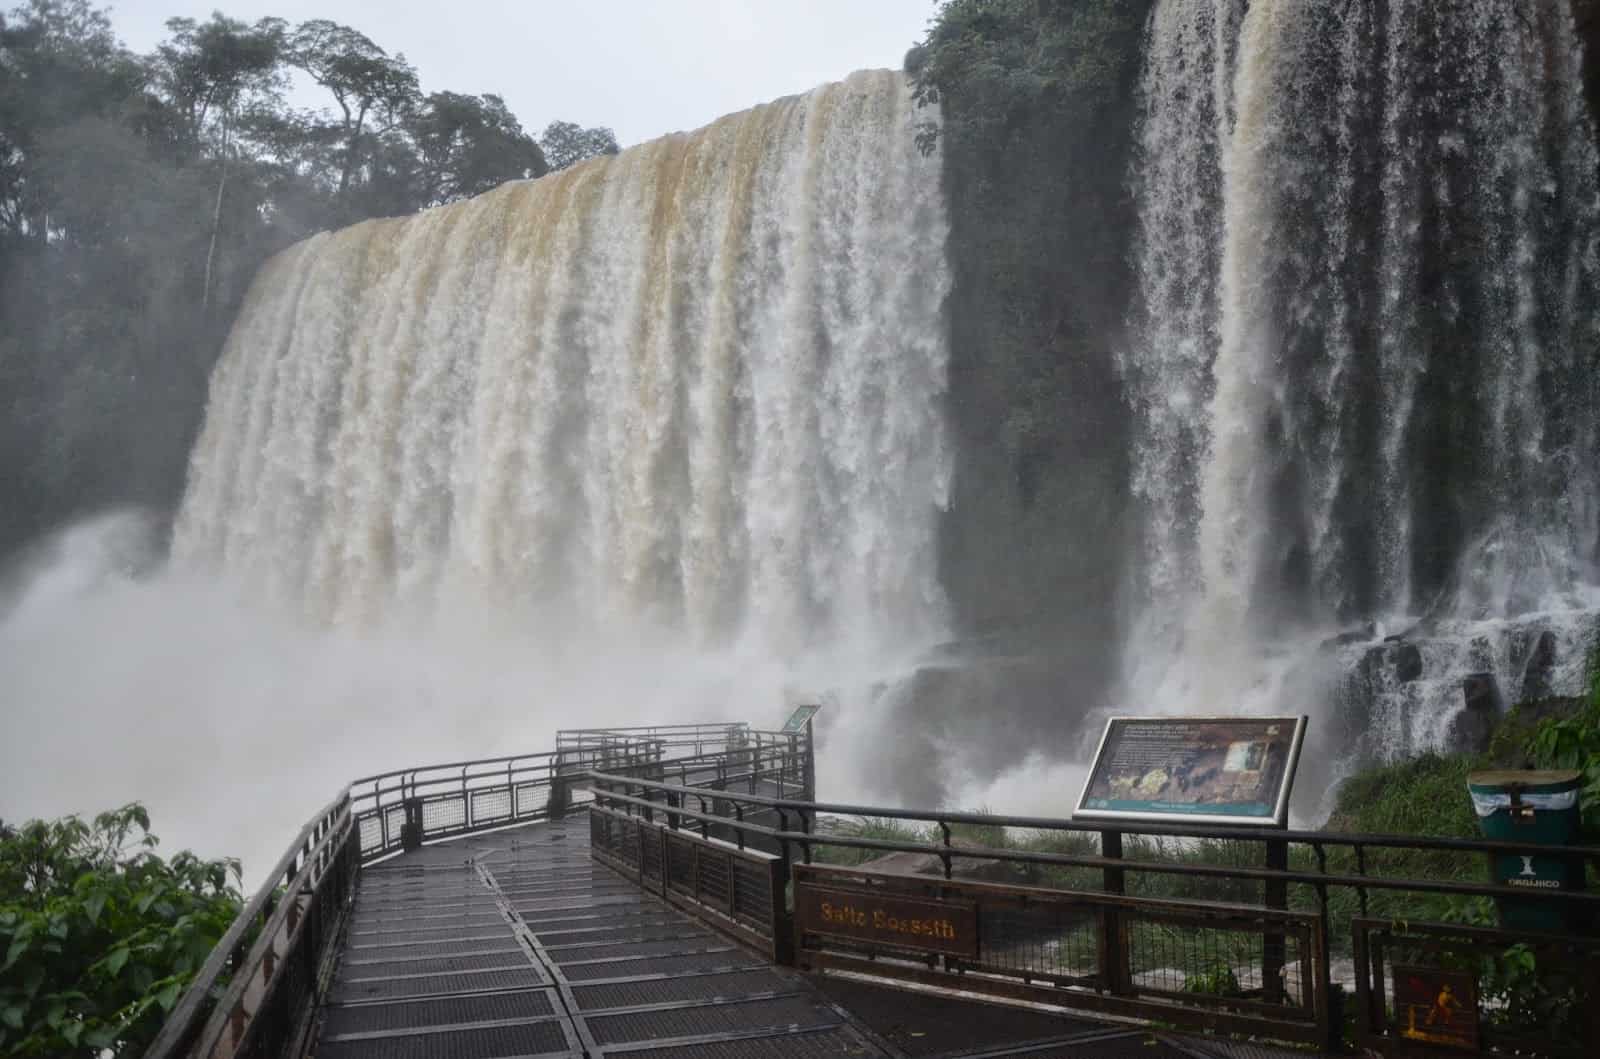 Lower Circuit of Parque Nacional Iguazú, Argentina